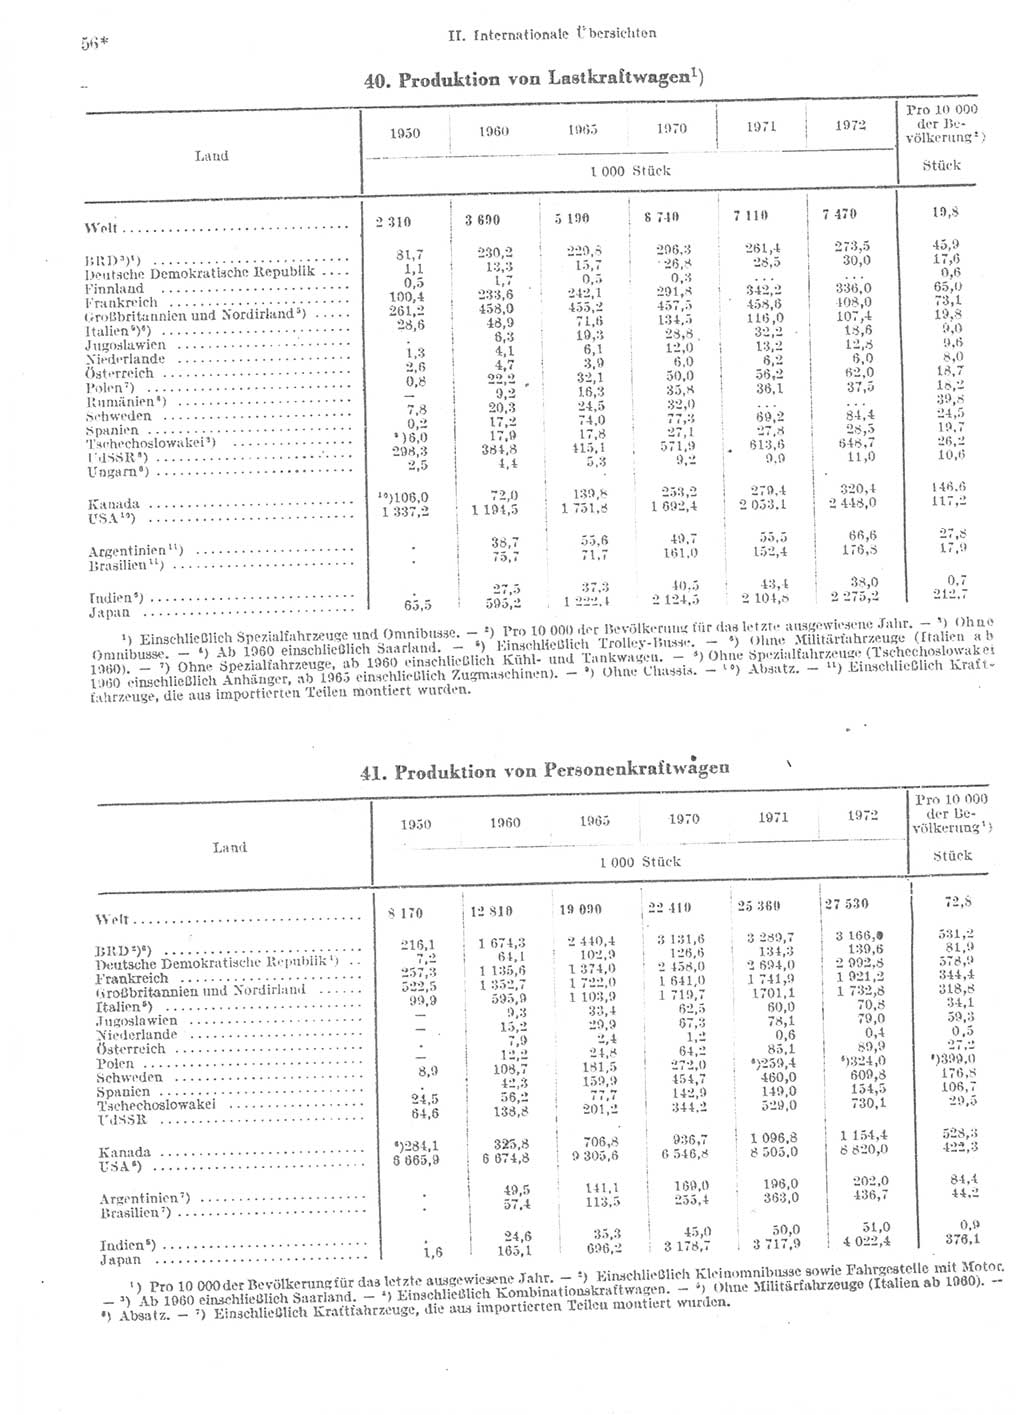 Statistisches Jahrbuch der Deutschen Demokratischen Republik (DDR) 1974, Seite 56 (Stat. Jb. DDR 1974, S. 56)